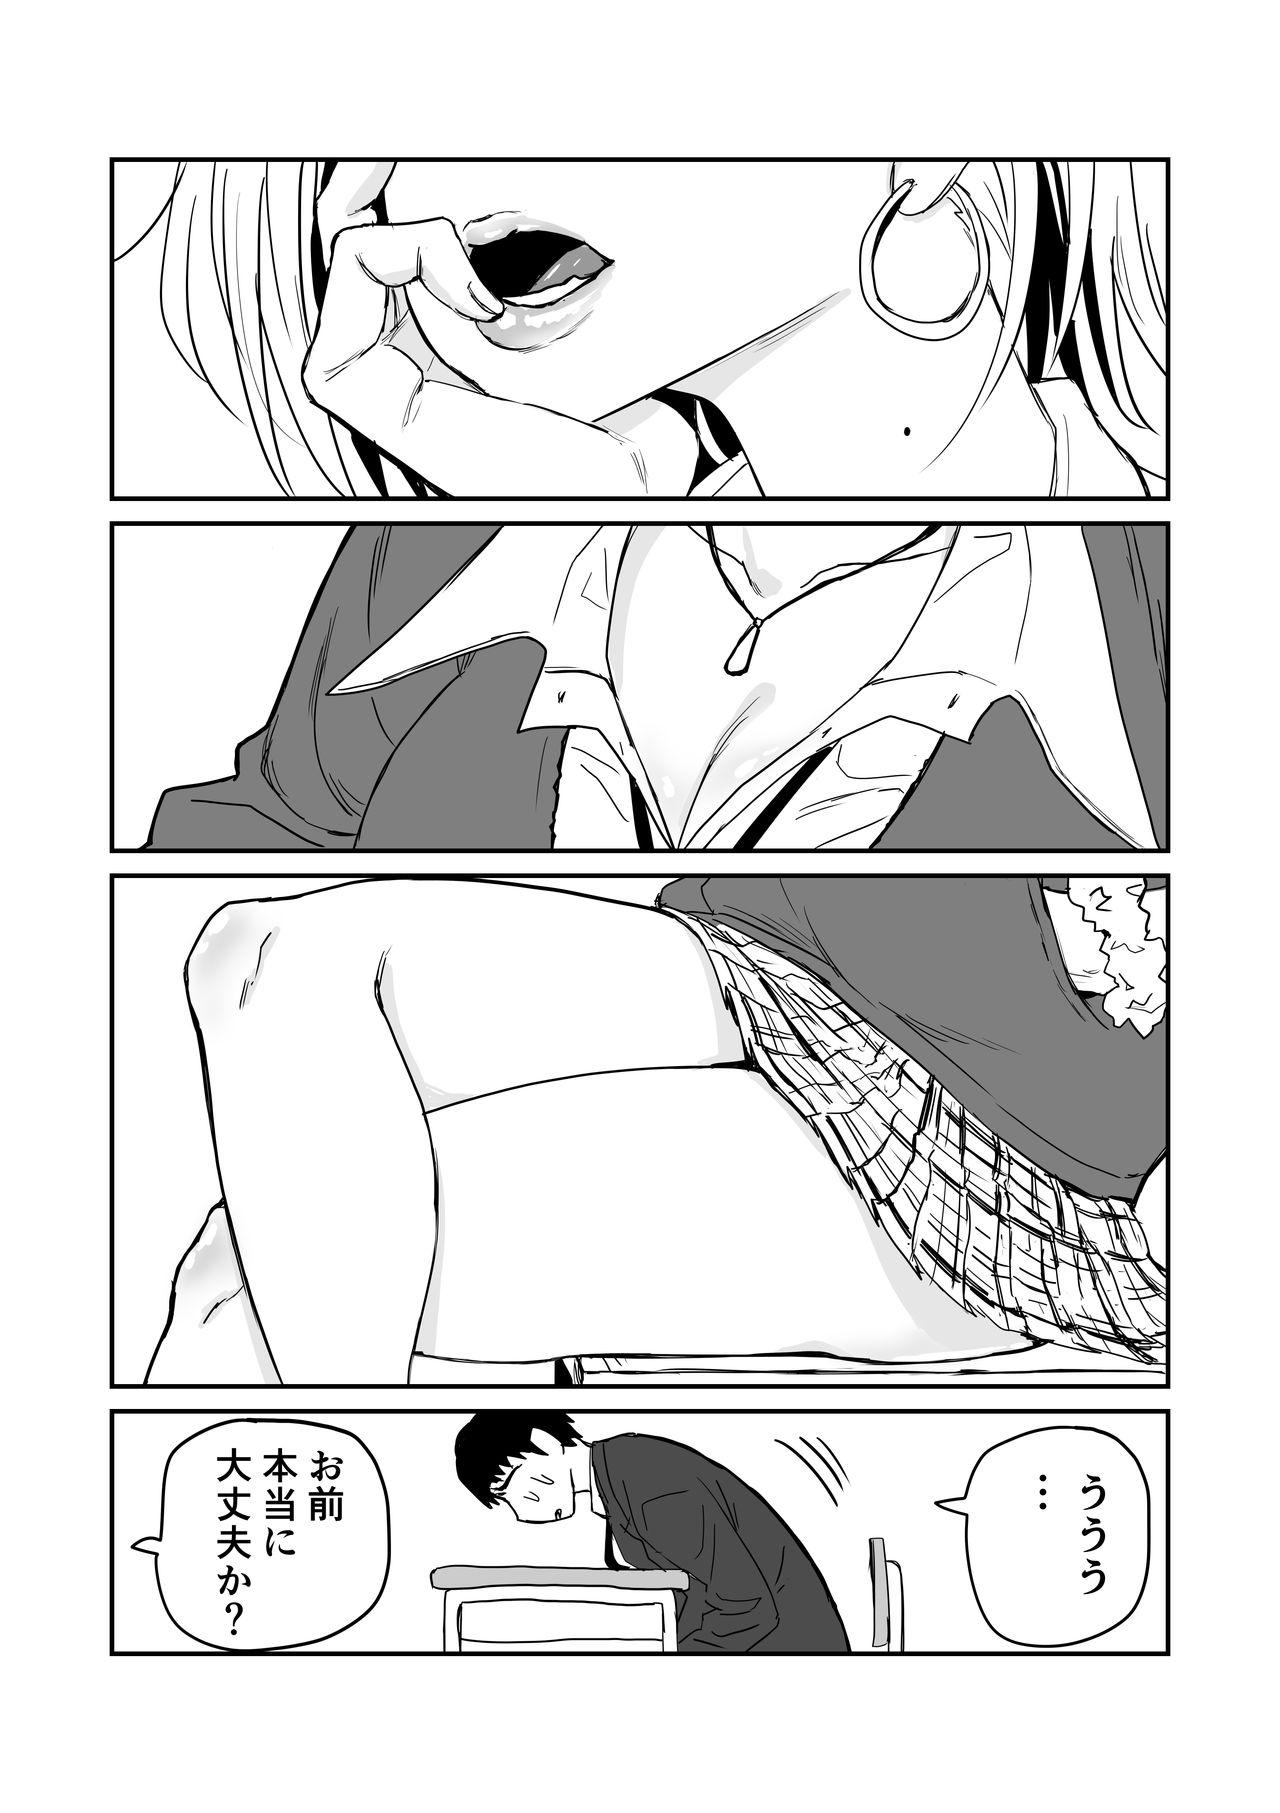 女子高生のエロ漫画 45